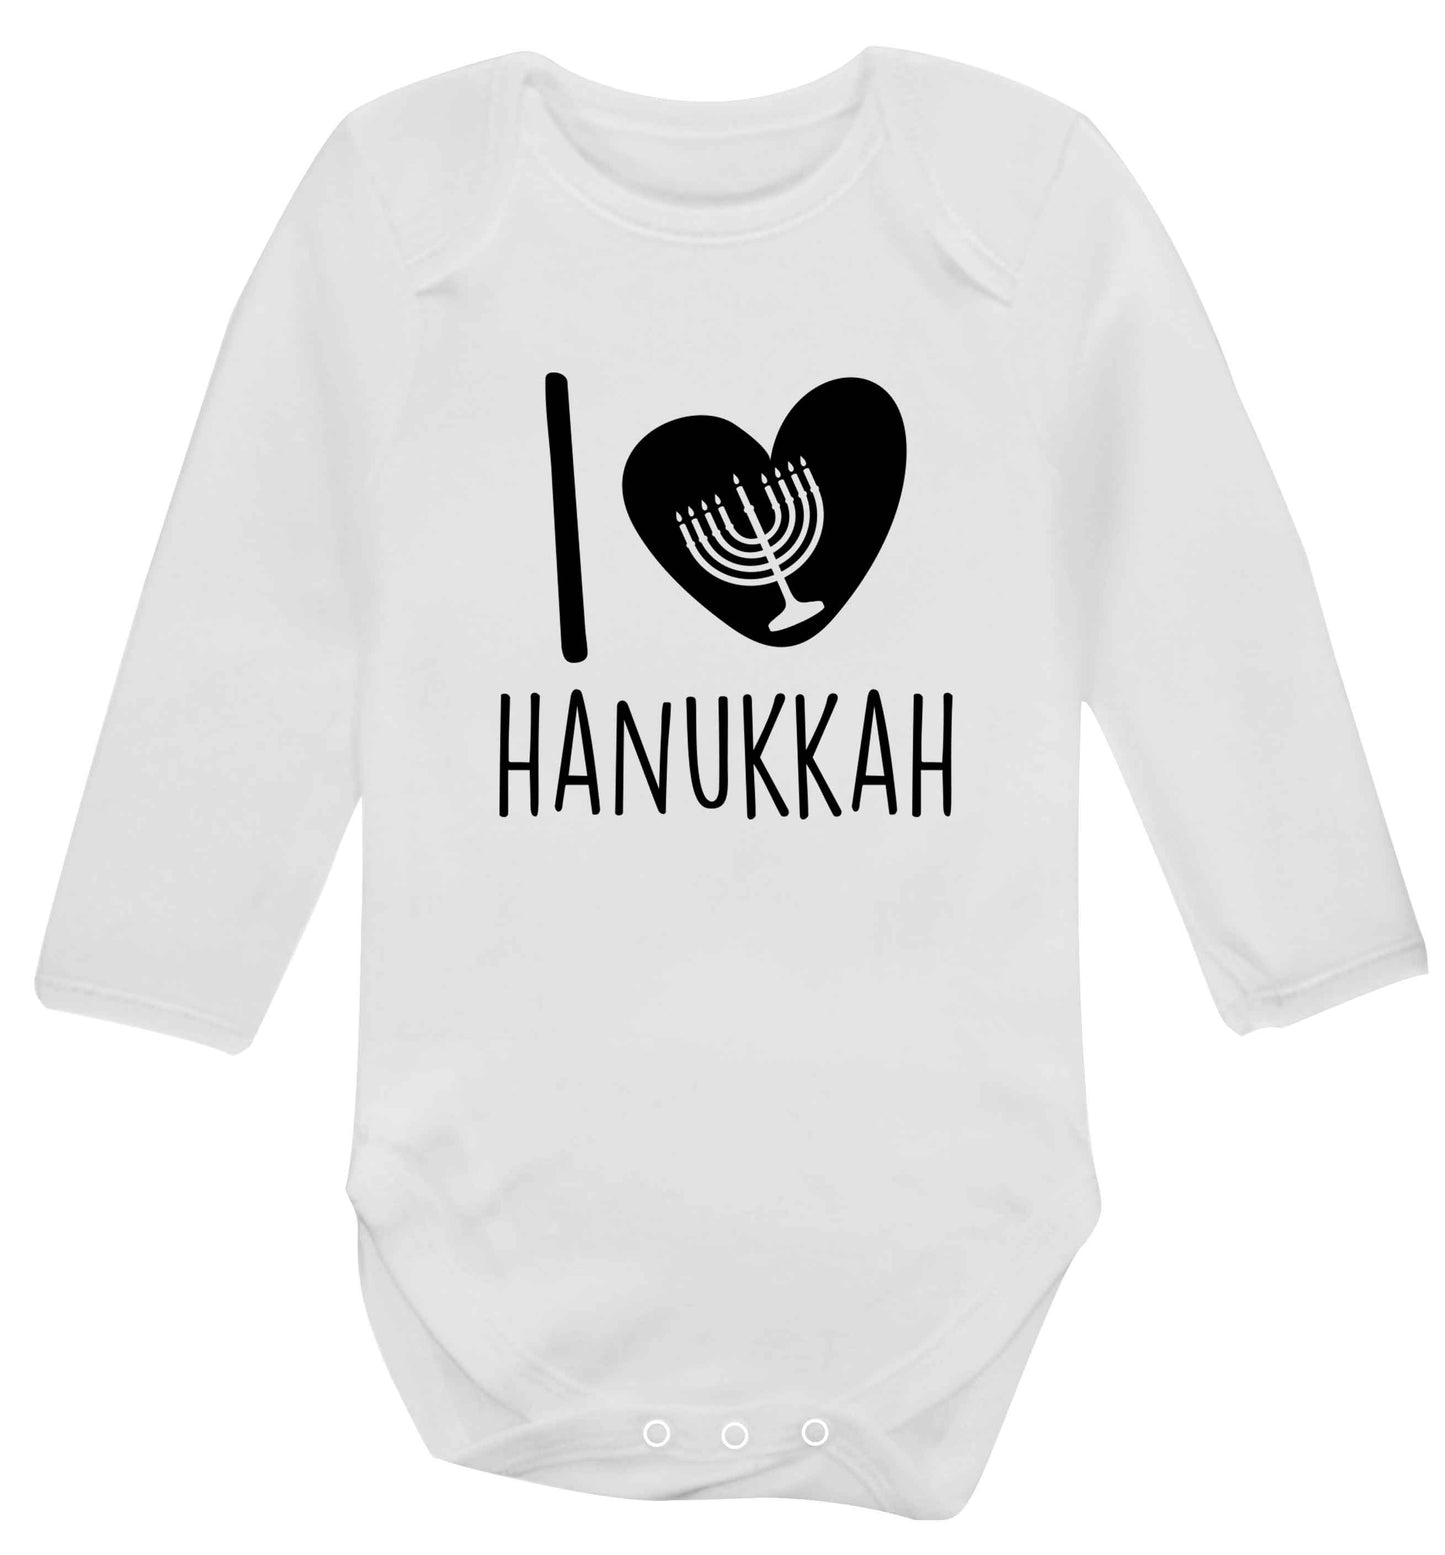 I love hanukkah baby vest long sleeved white 6-12 months